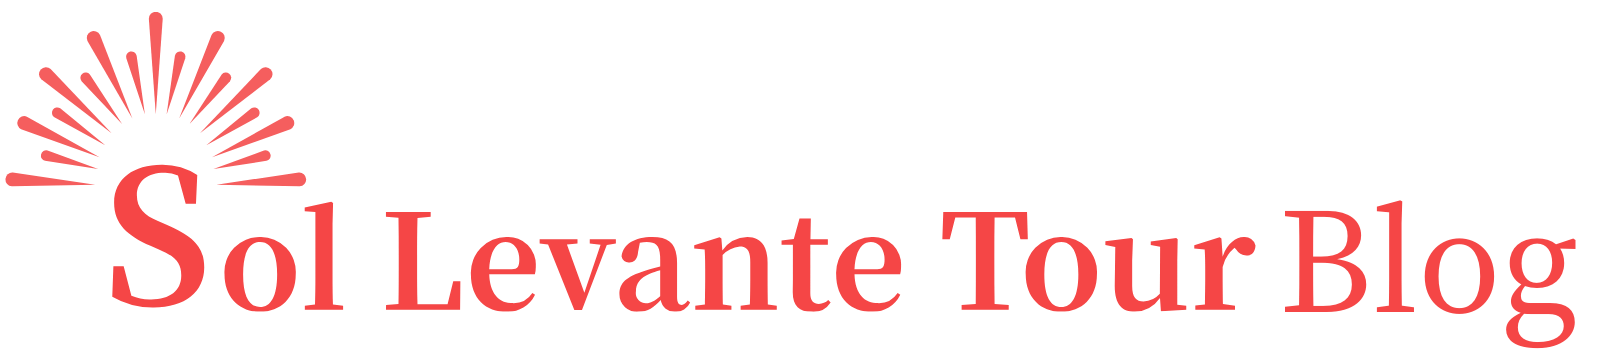 Sol Levante Tourブログ